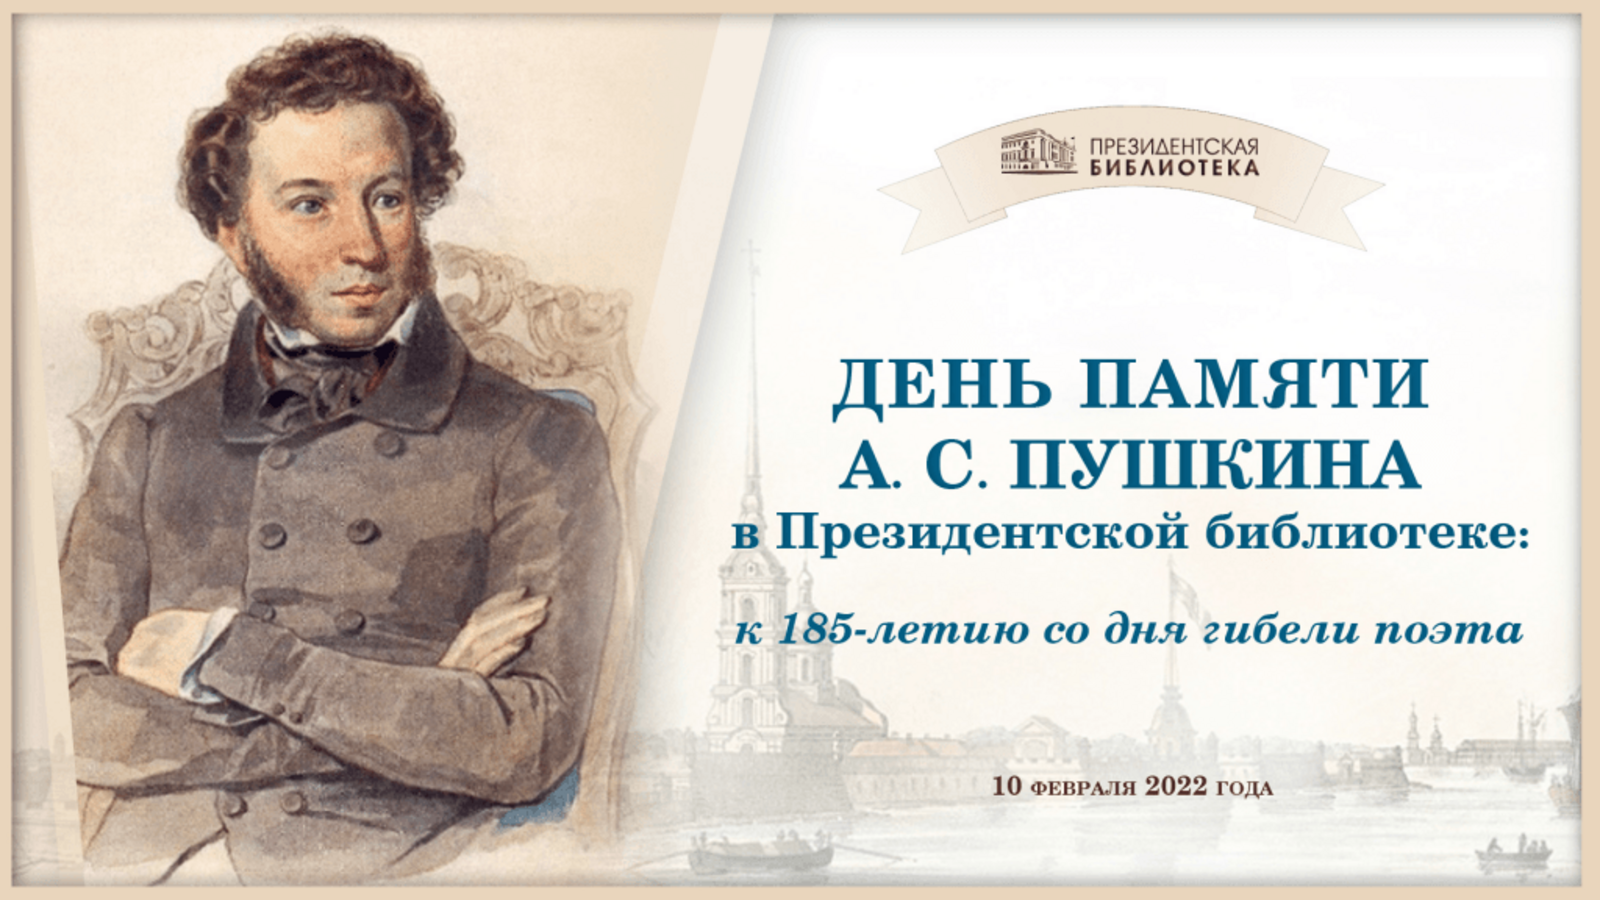 В Президентской библиотеке состоится конференция-вебинар «День памяти А. С. Пушкина»